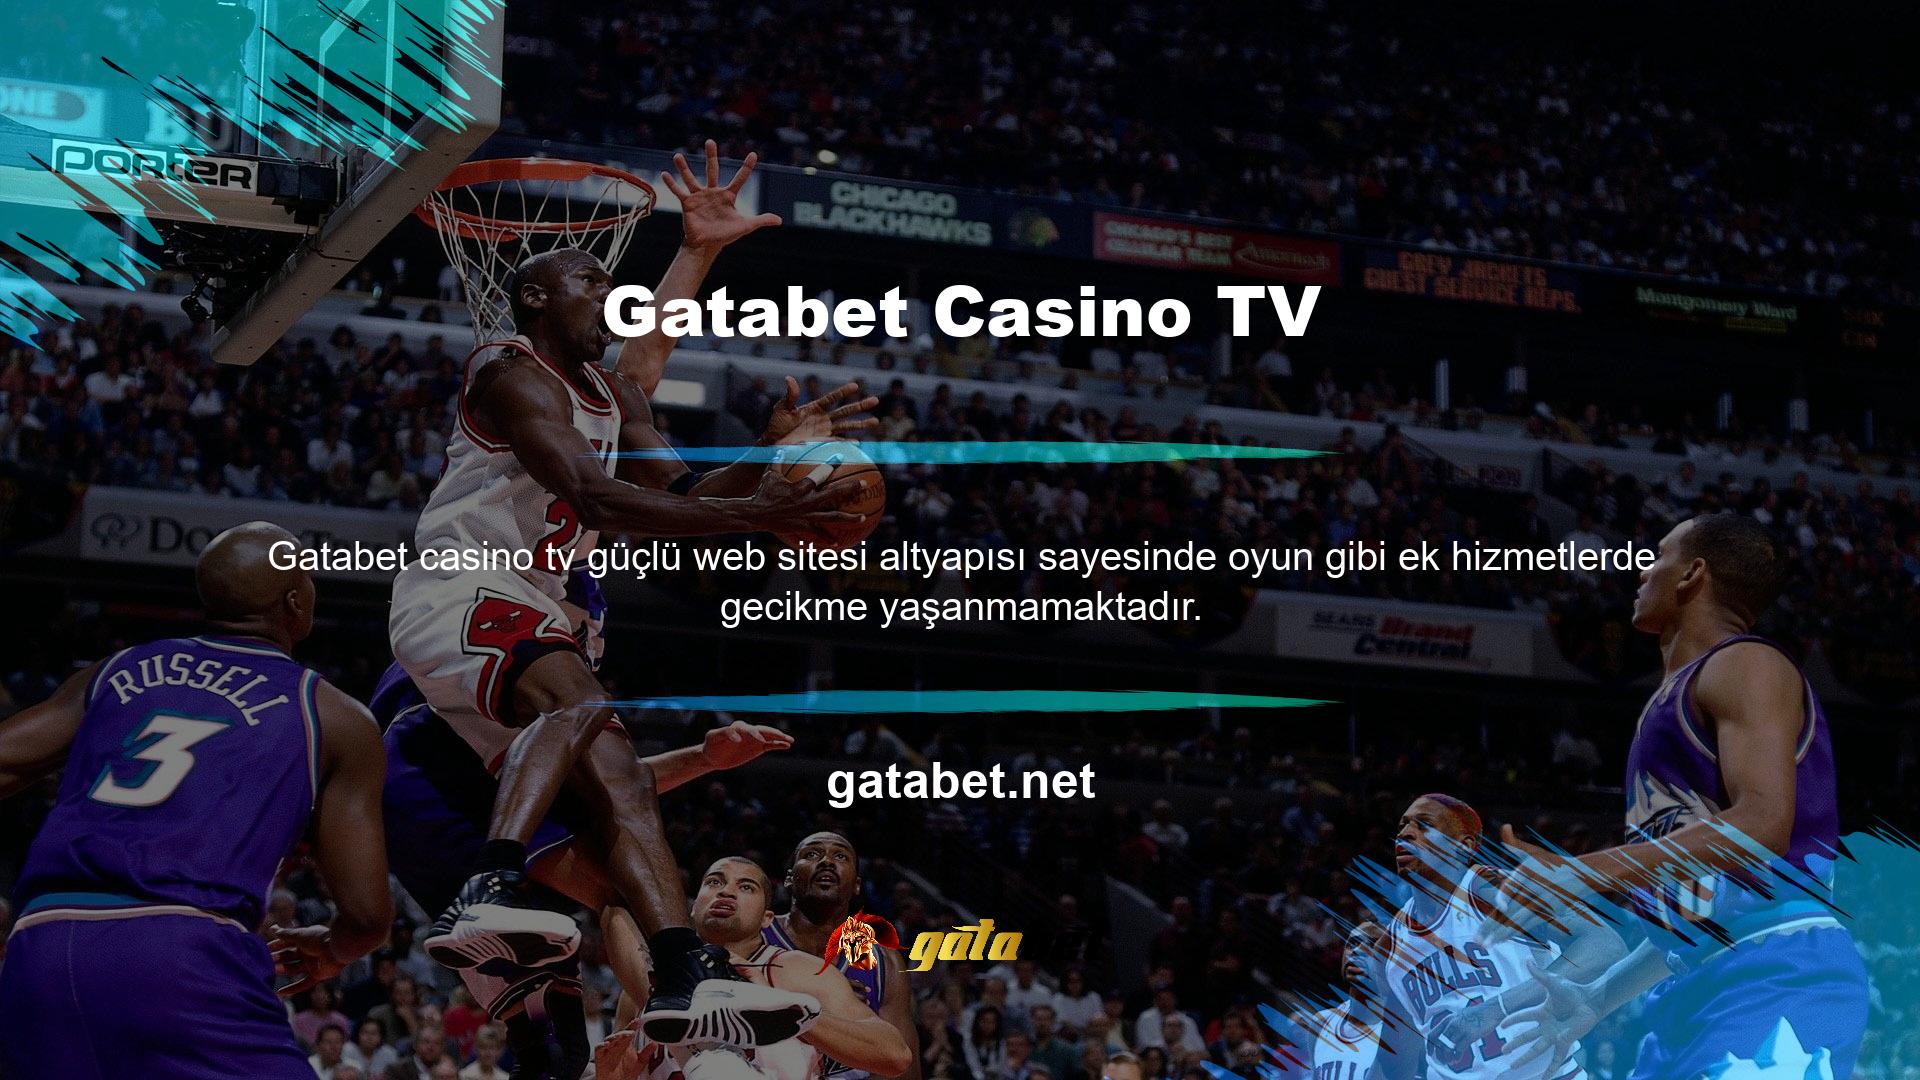 Gatabet Casino TV ücretli bir hizmet midir? Giriş, güçlü yöntem altyapısı ve yeni Gatabet üyeleriyle 720 p çözünürlükte canlı yayınları kesintisiz izleyebilirsiniz